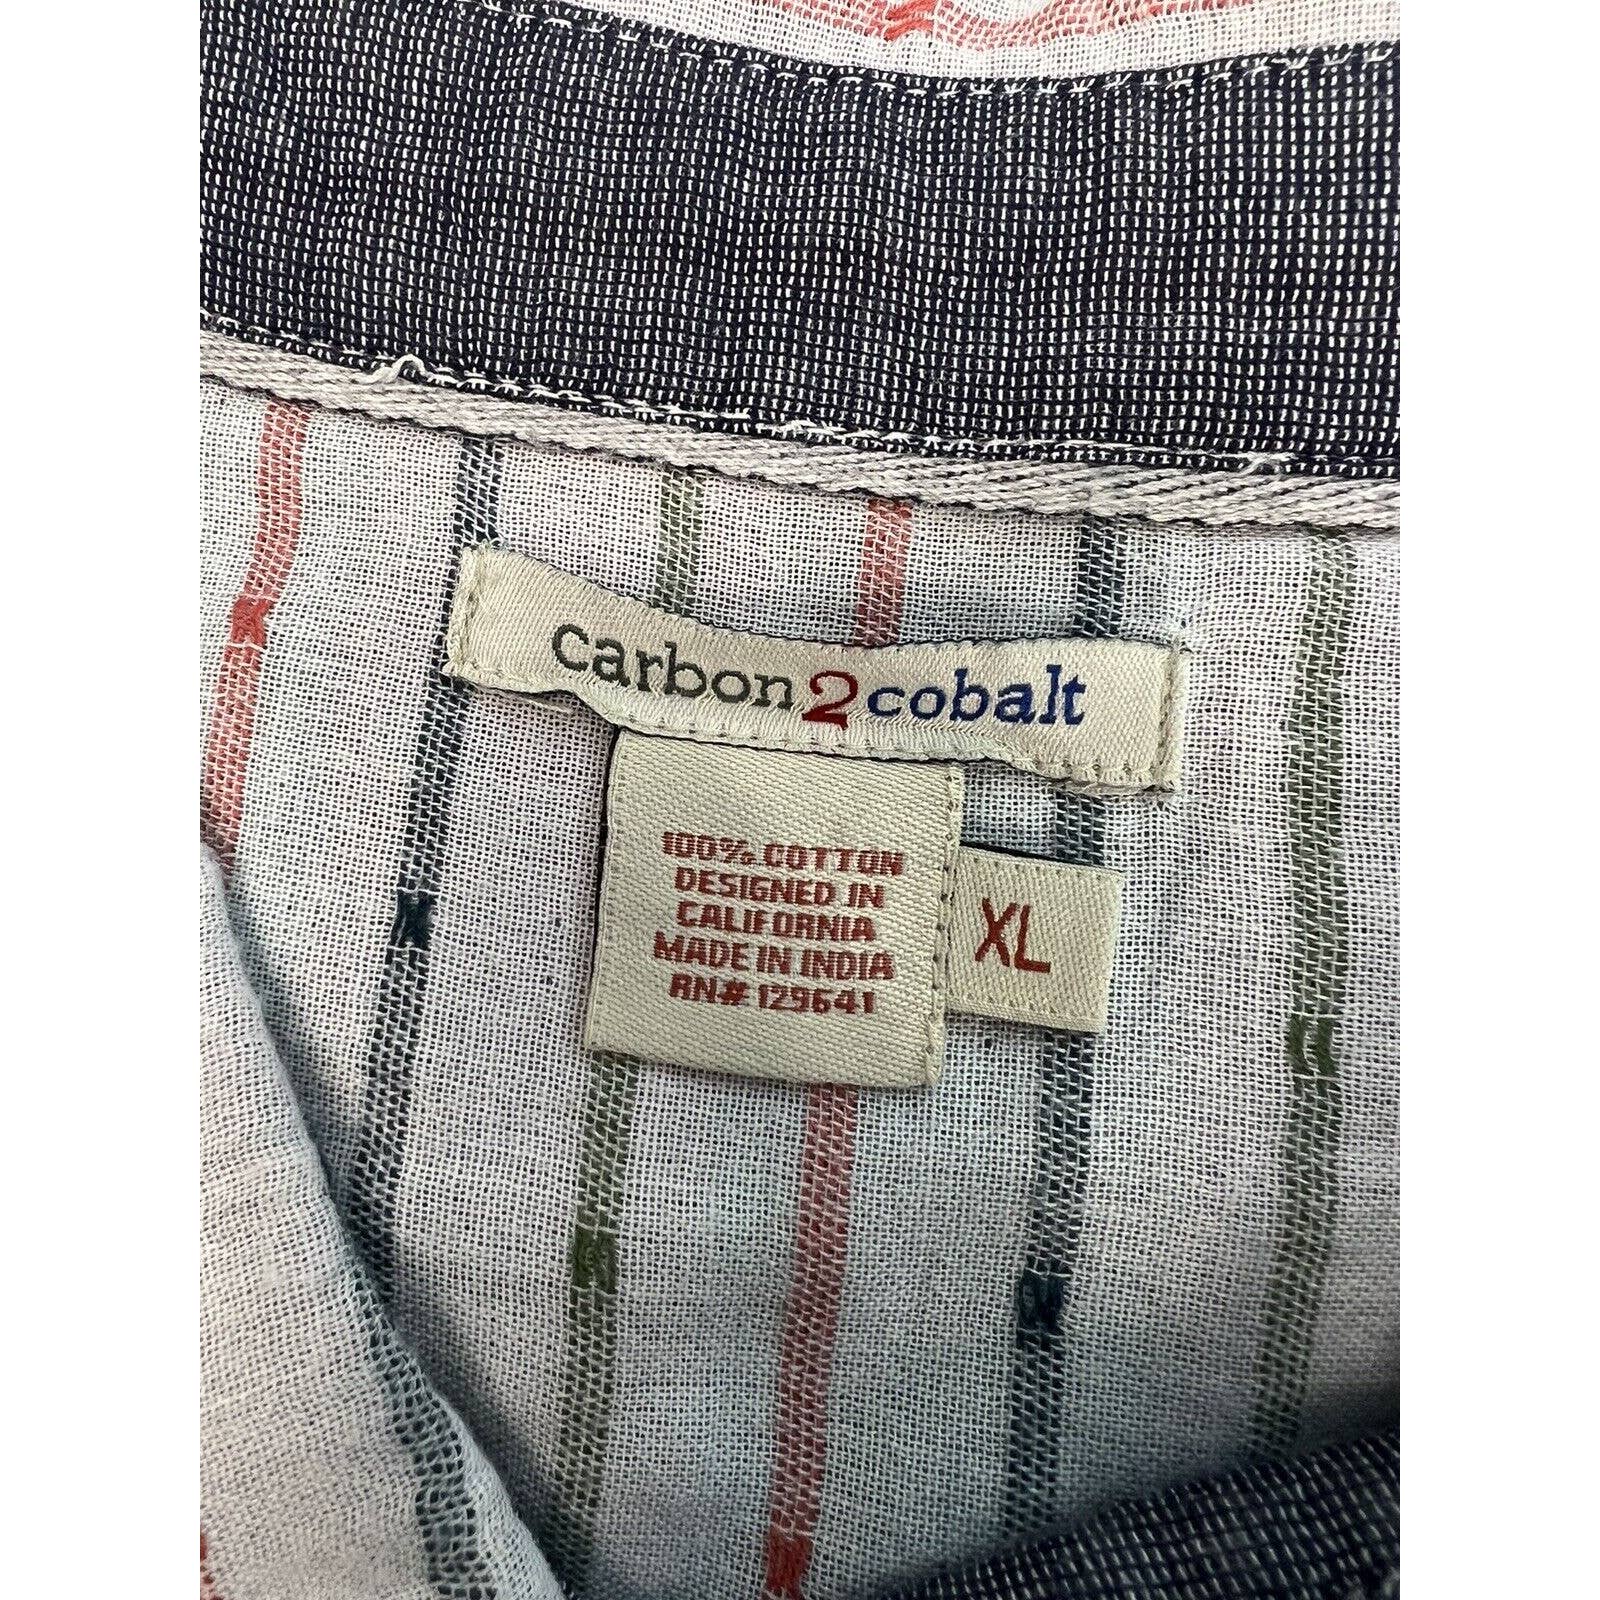 Carbon 2 Cobalt Button Up Shirts Mens XL Striped Cotton Short Sleeve Bundle Lot